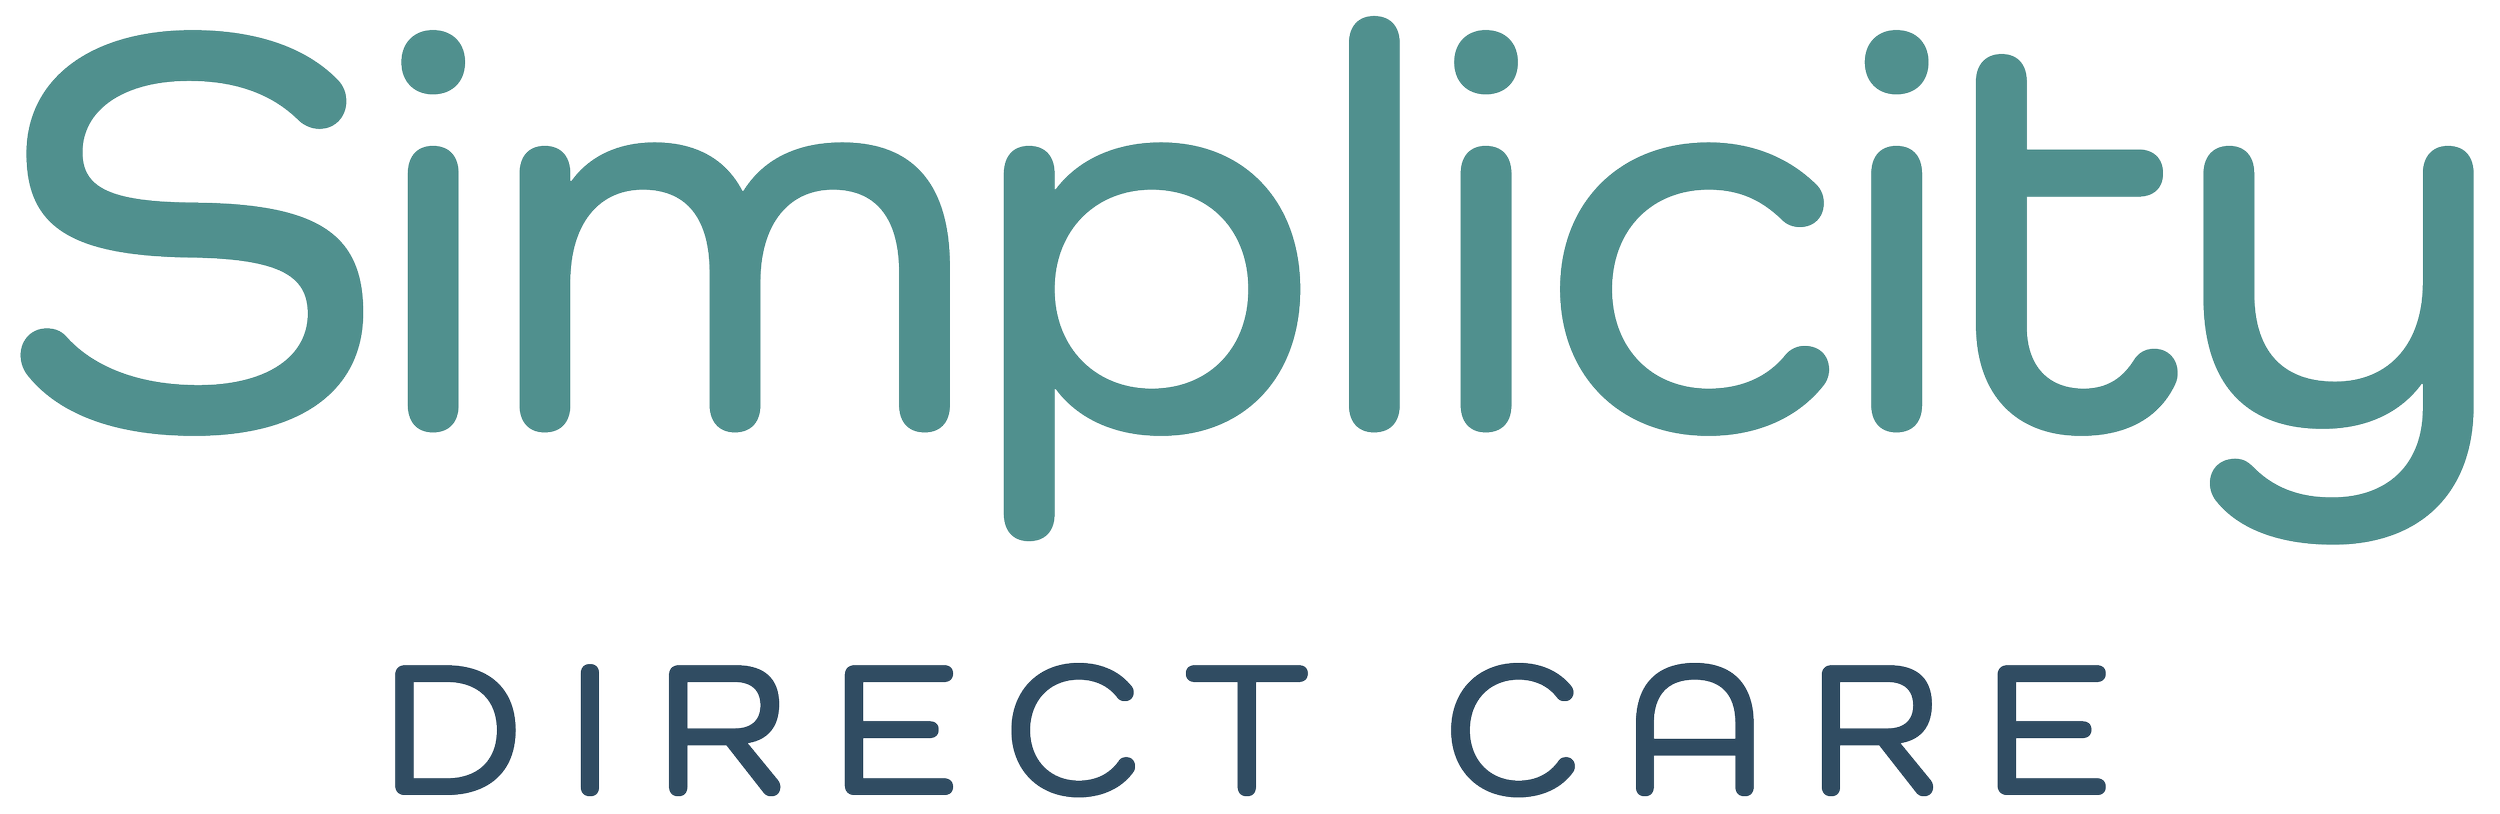 Simplicity Direct Care